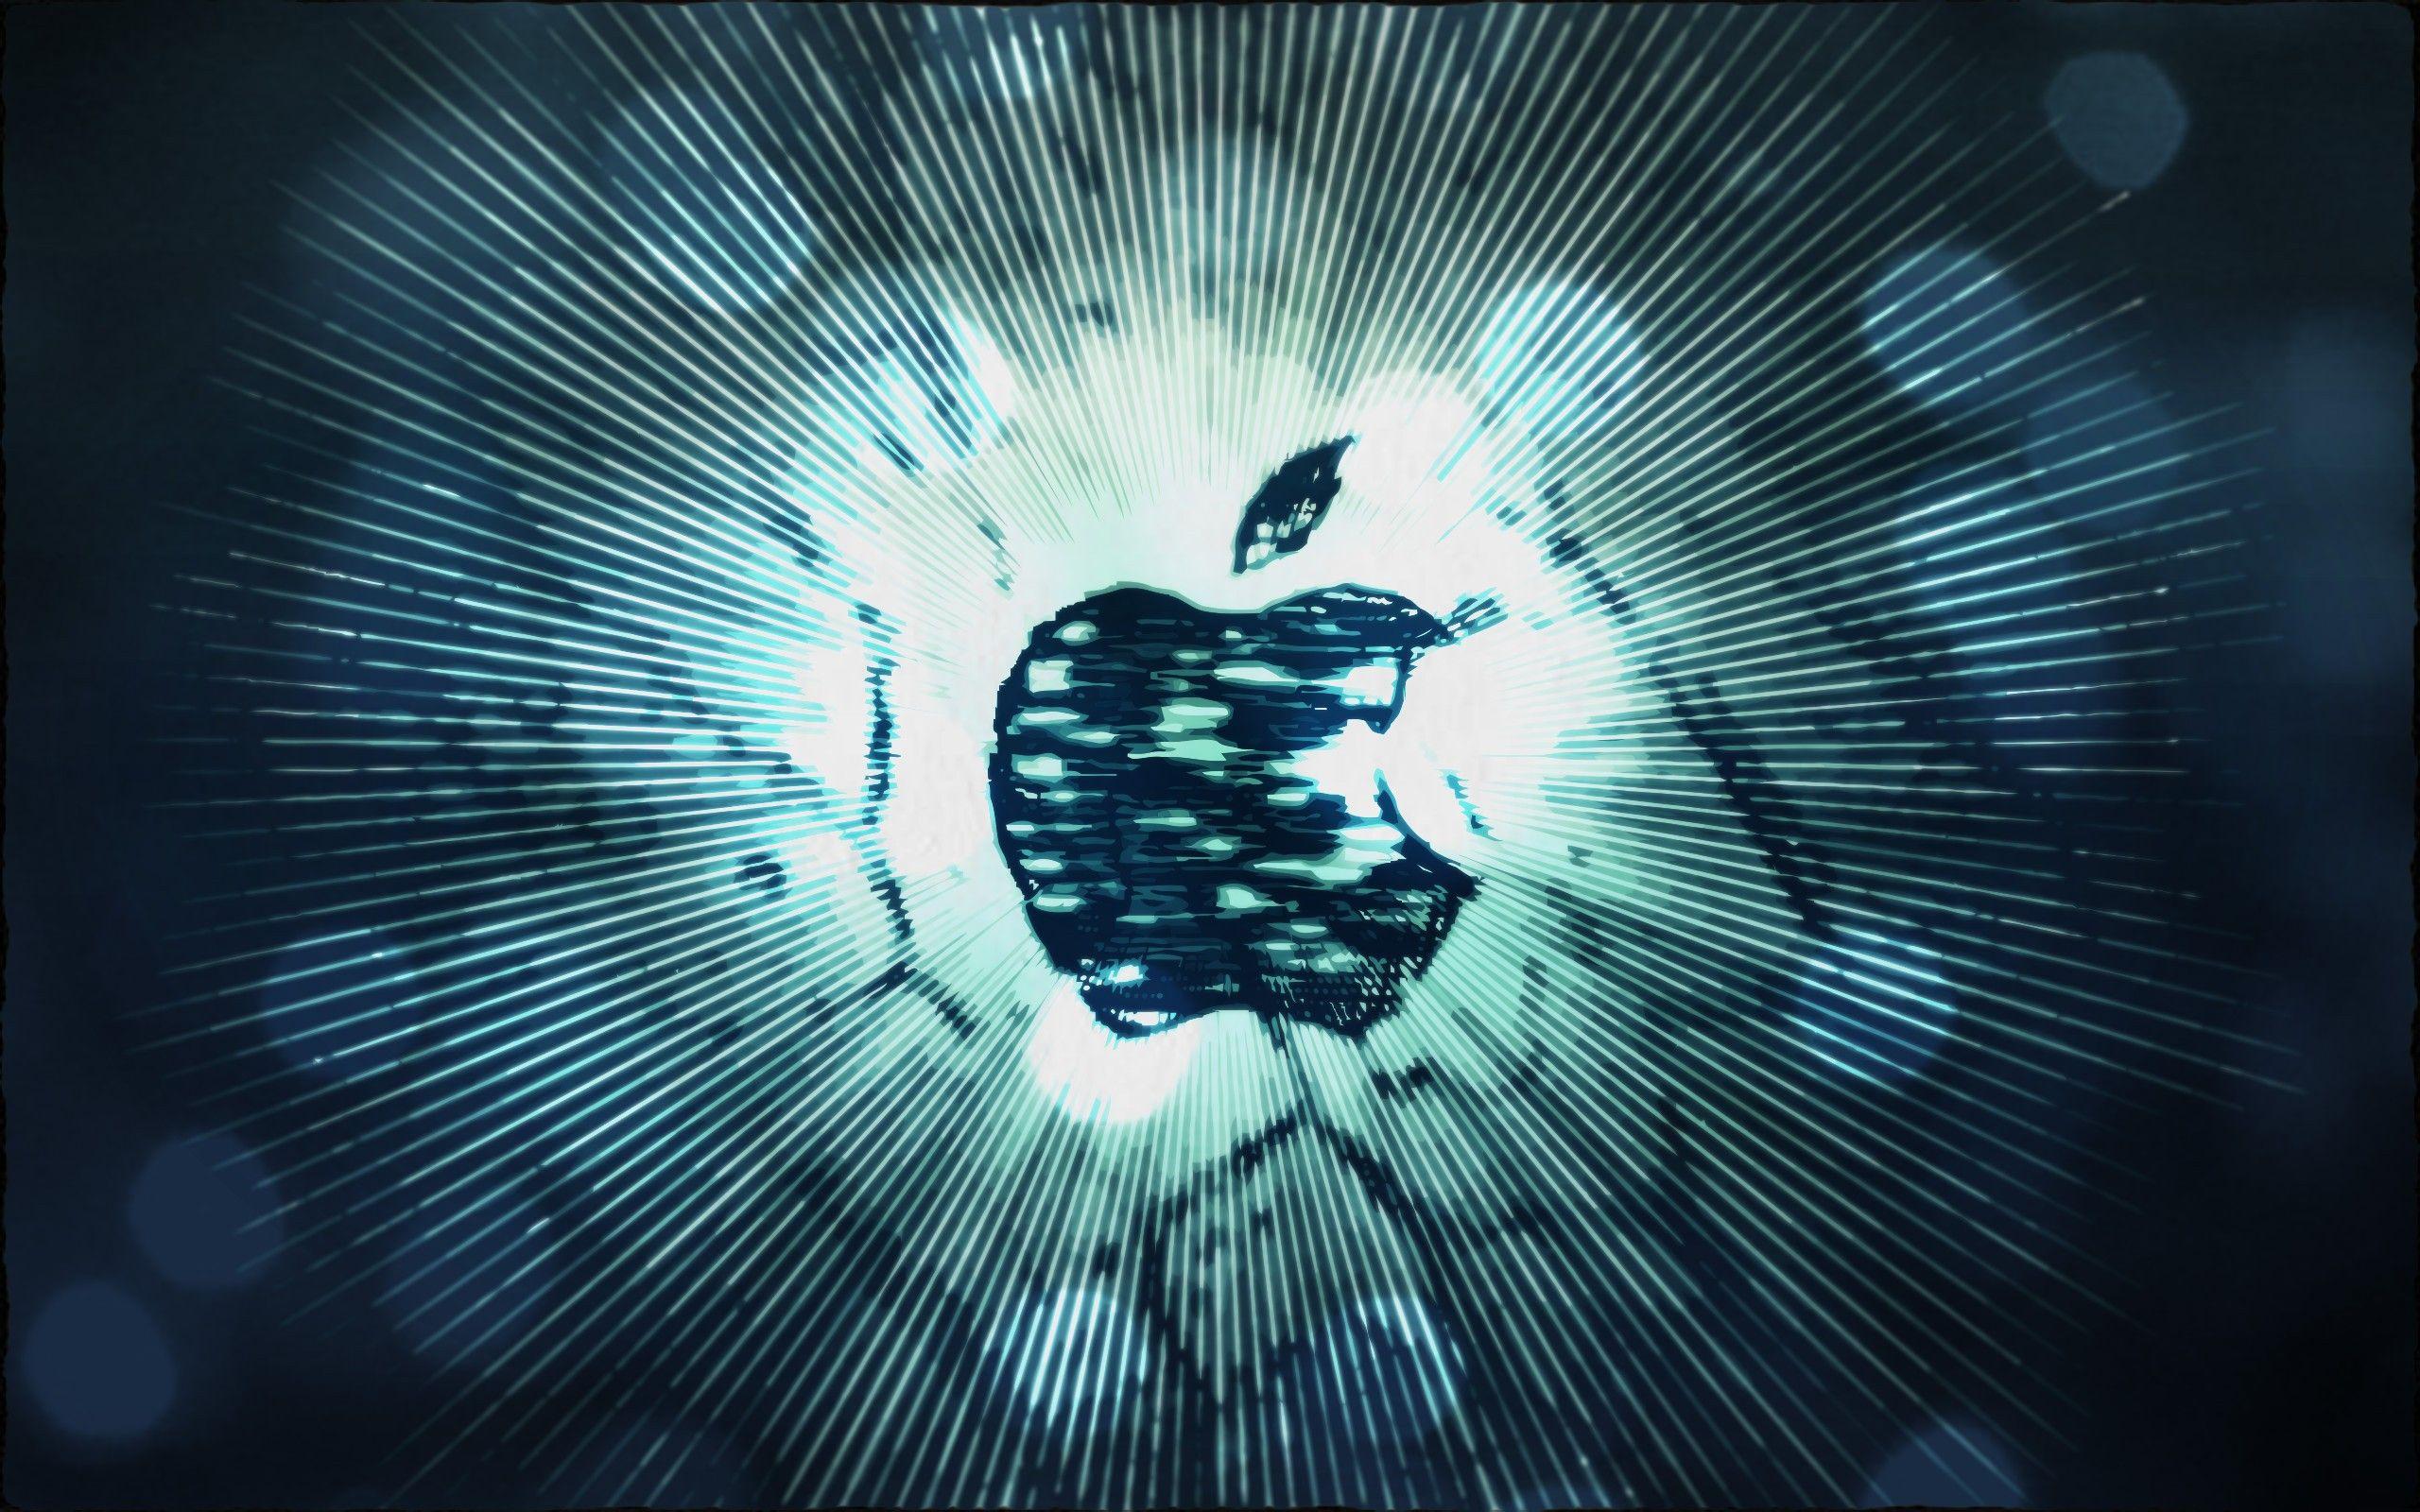 Download the Light Burst Apple Wallpaper, Light Burst Apple iPhone